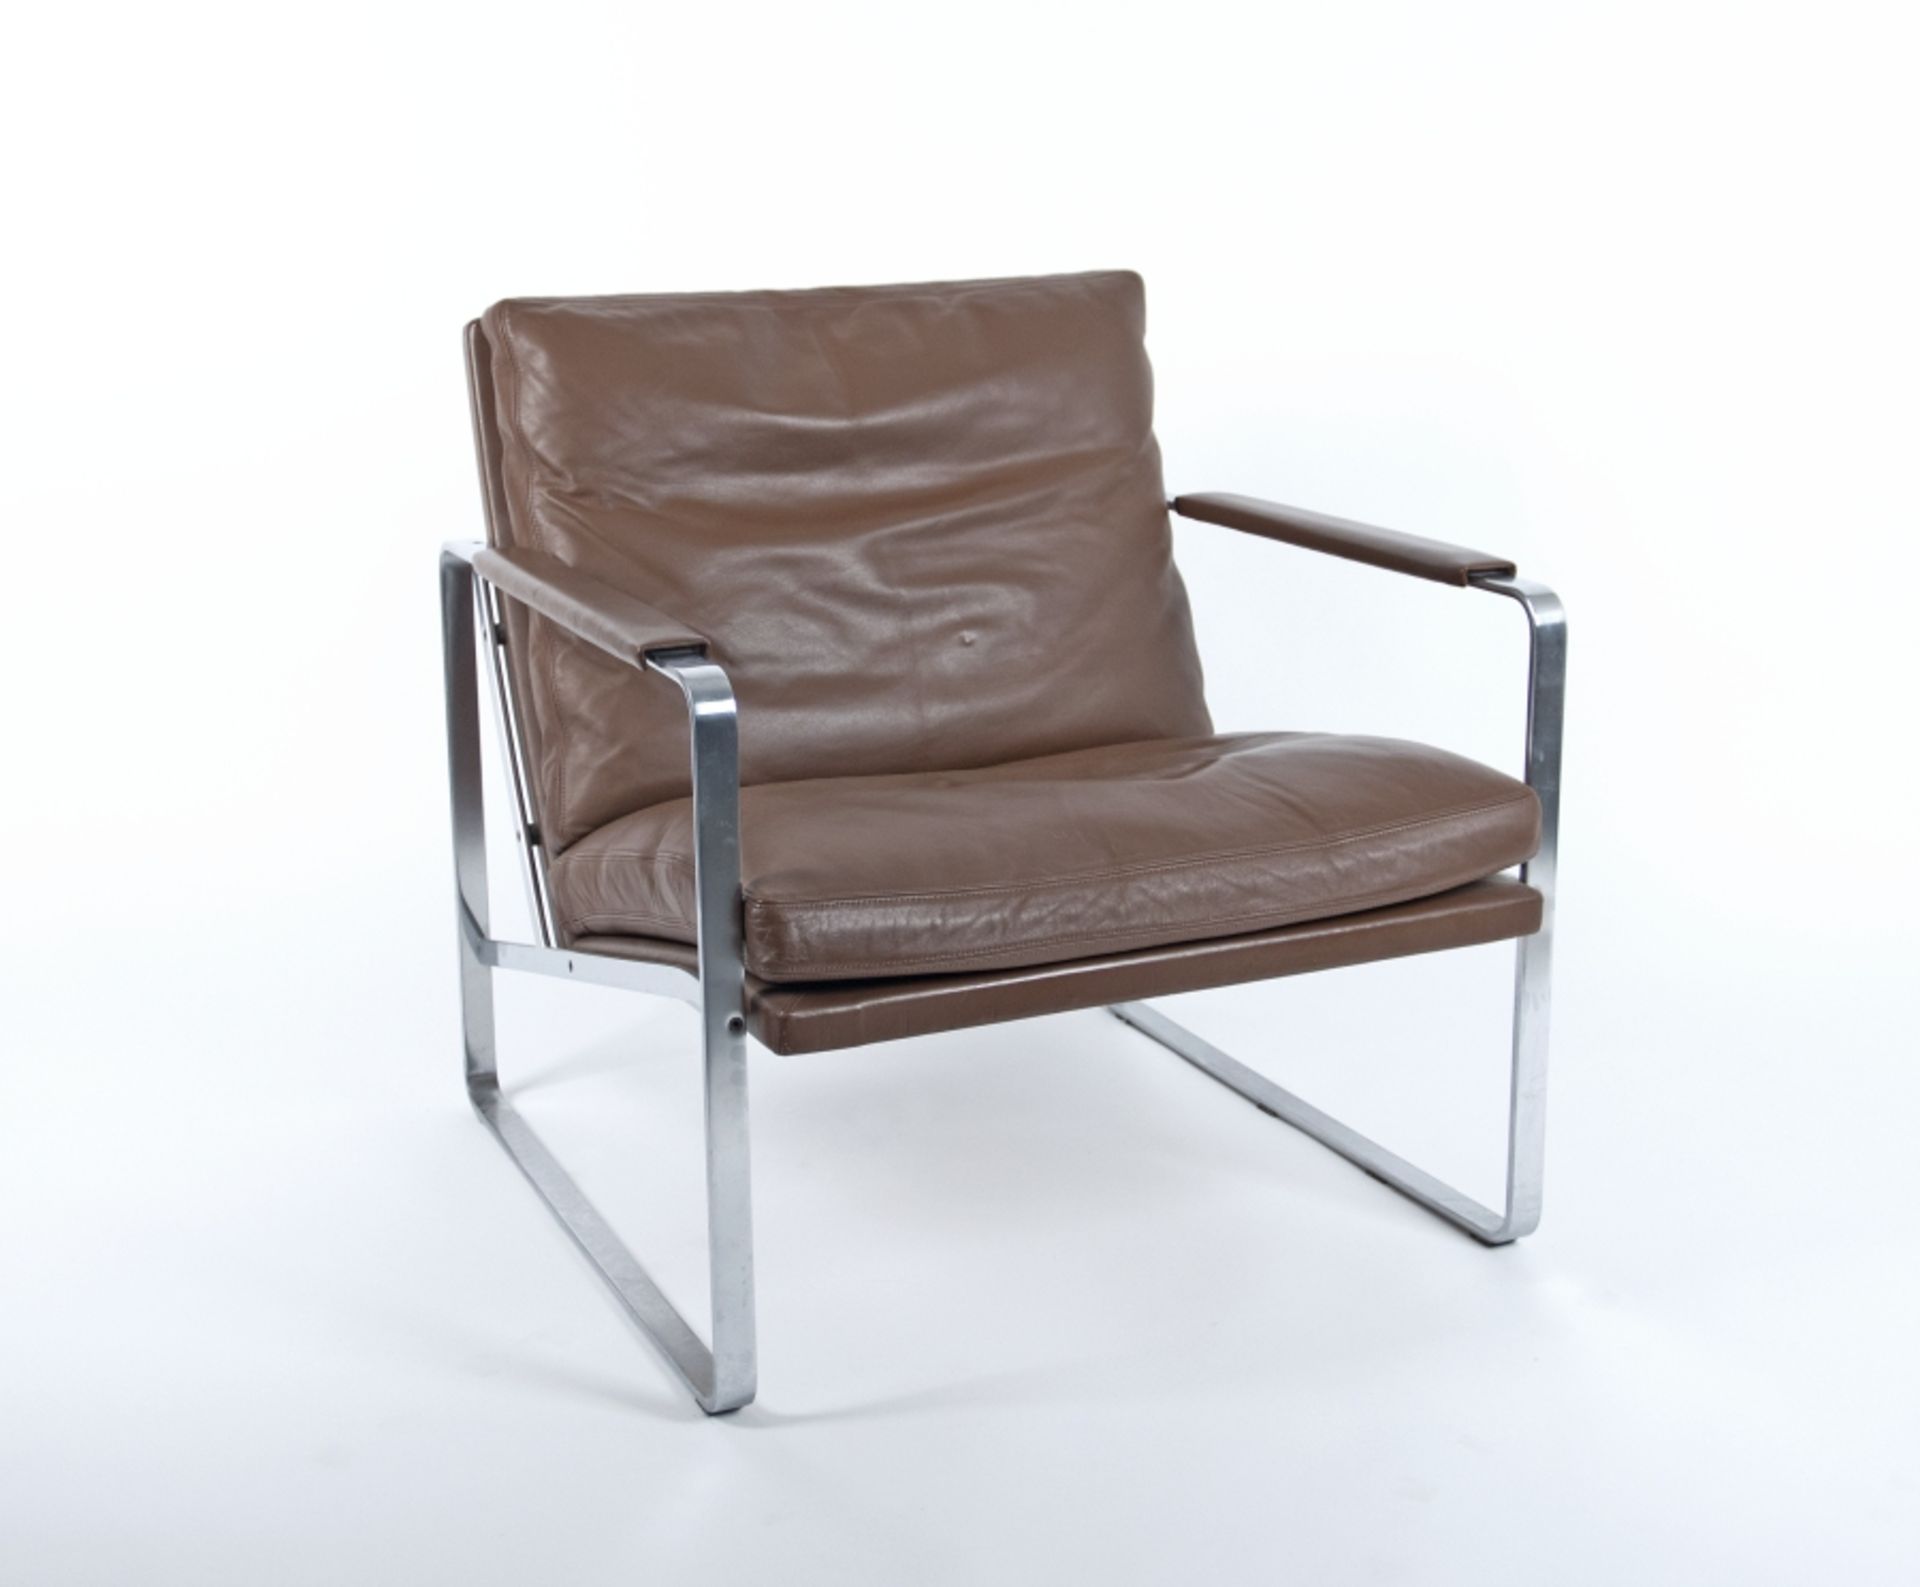 Fabricius, Preben und Jørgen Kastholm:  Easy Chair FK 6720